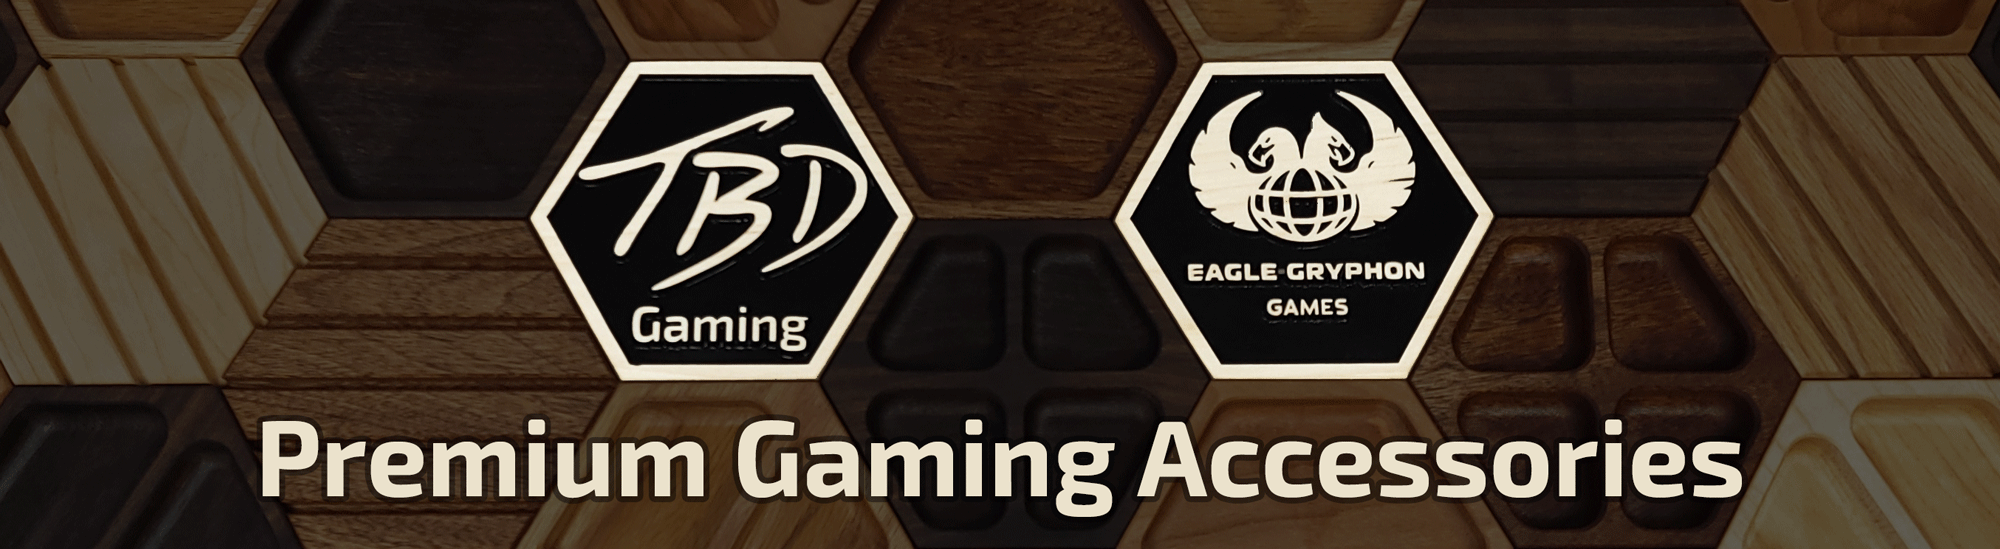 Premium Gaming Accessories